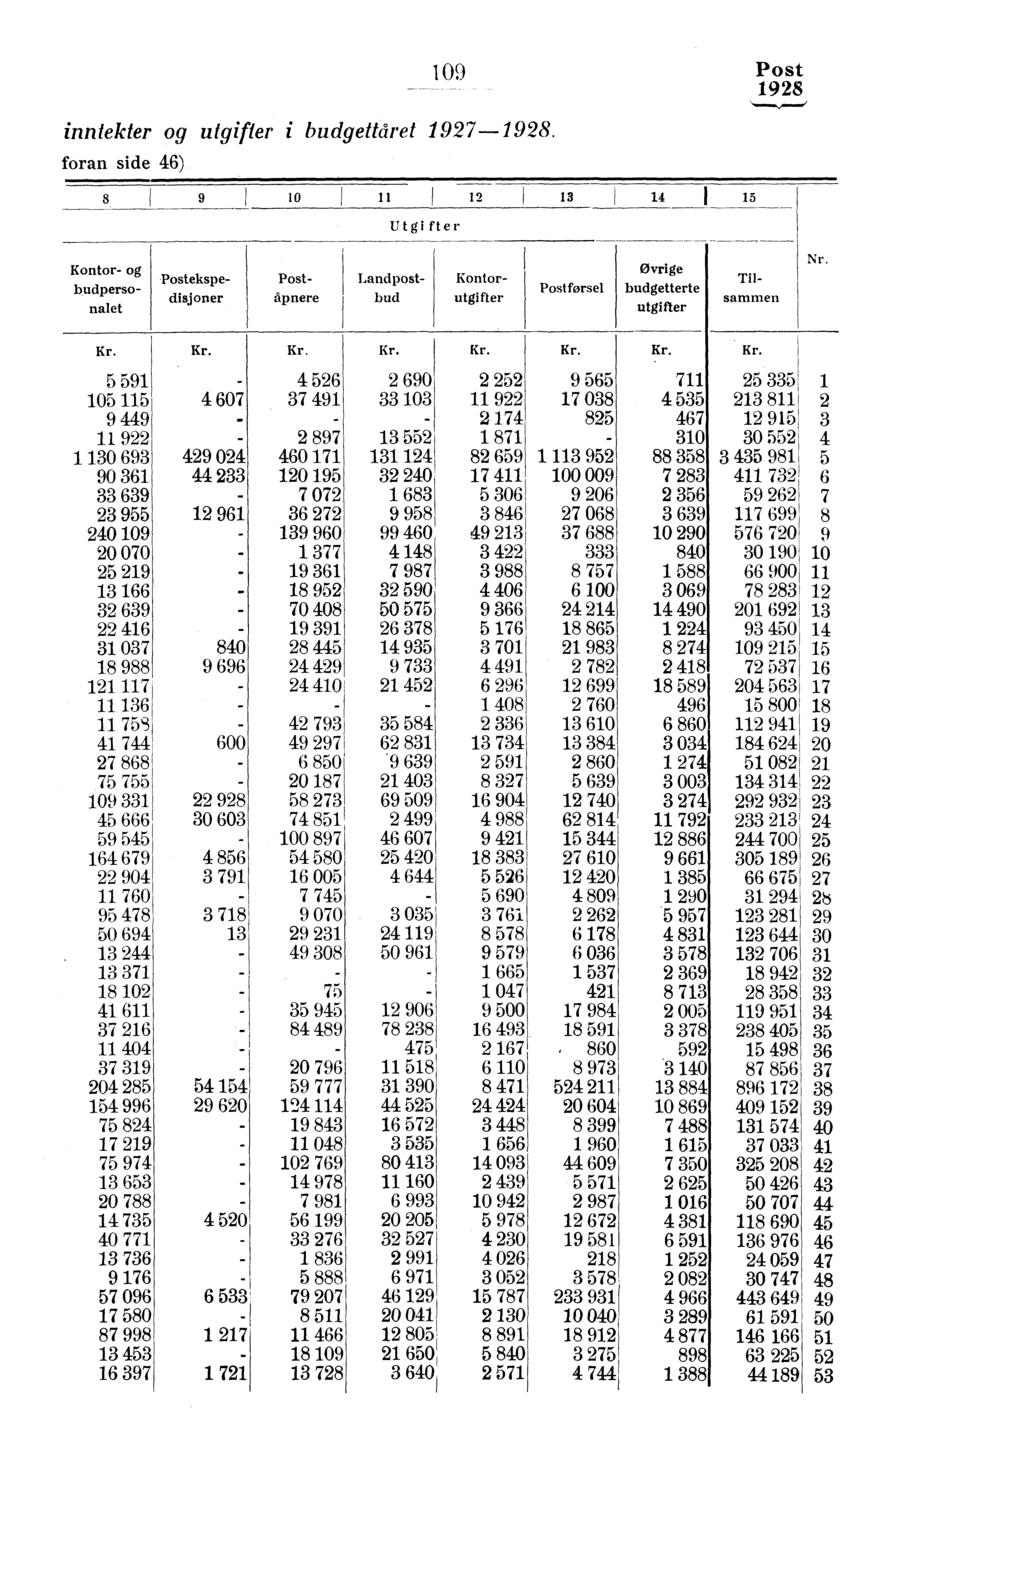 inntekter og utgifter i budgettåret 97-.